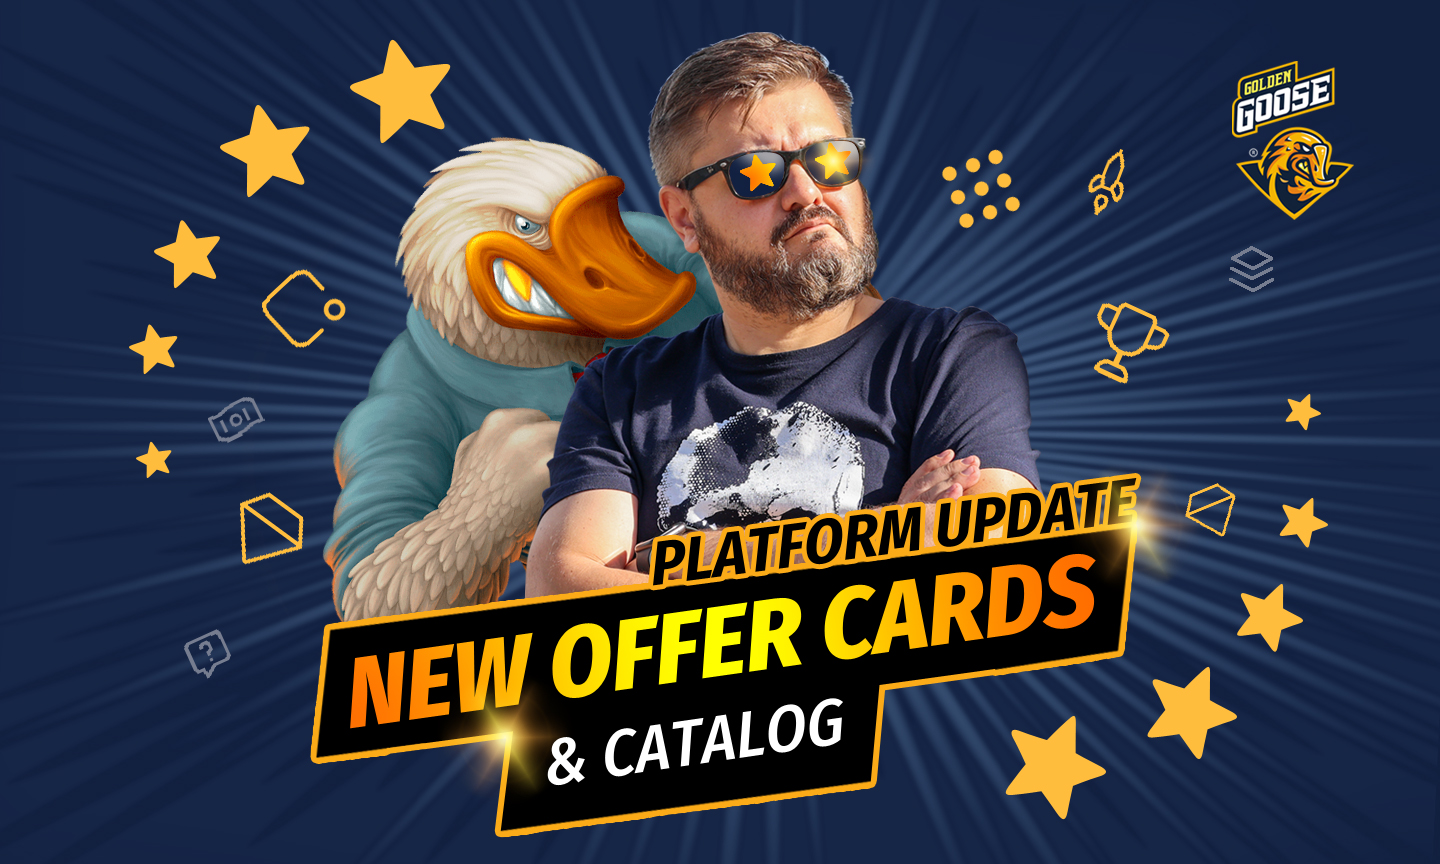 Platform Update: New Offer Cards & Catalog